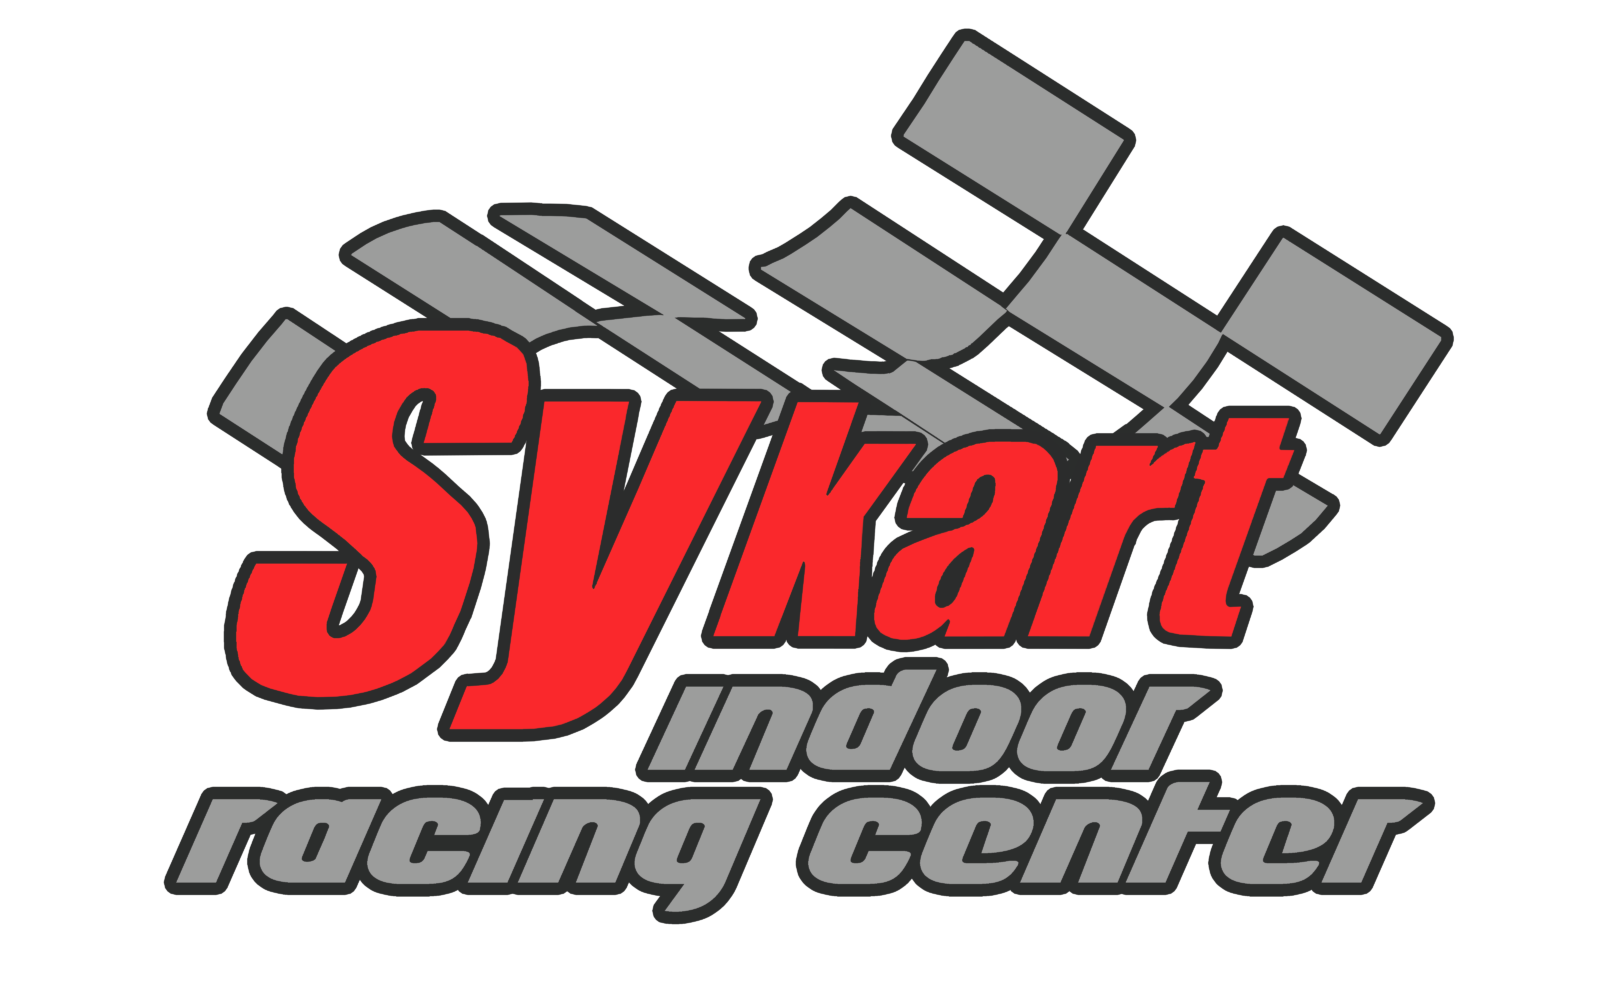 Sykart Indoor Racing